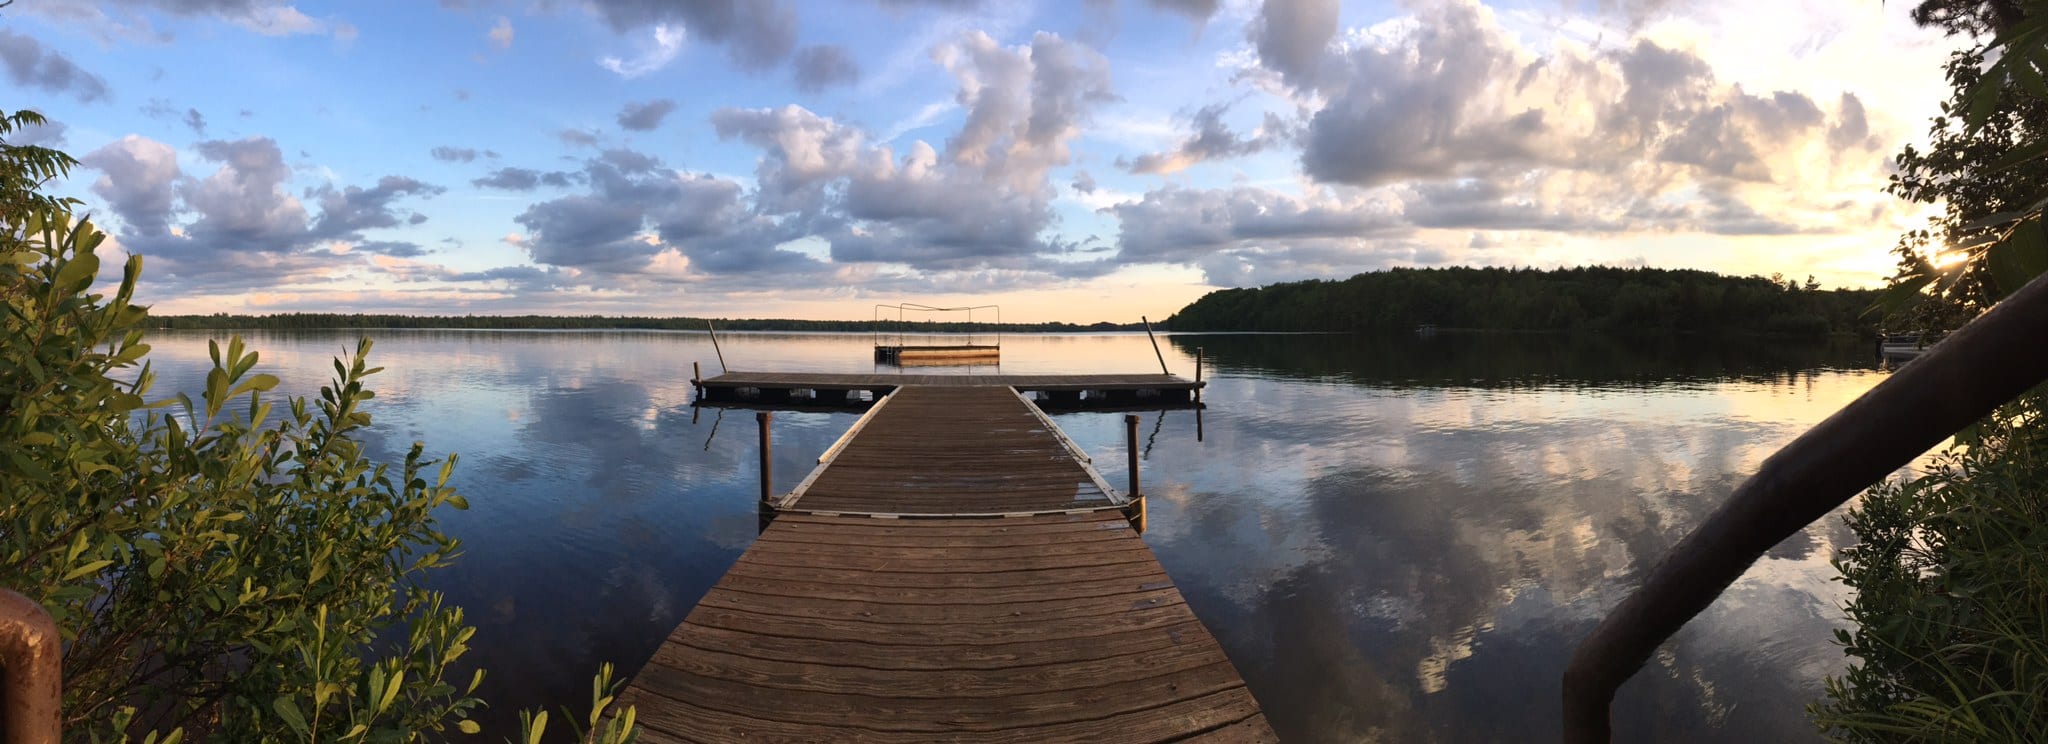 Lake dock at sunset.